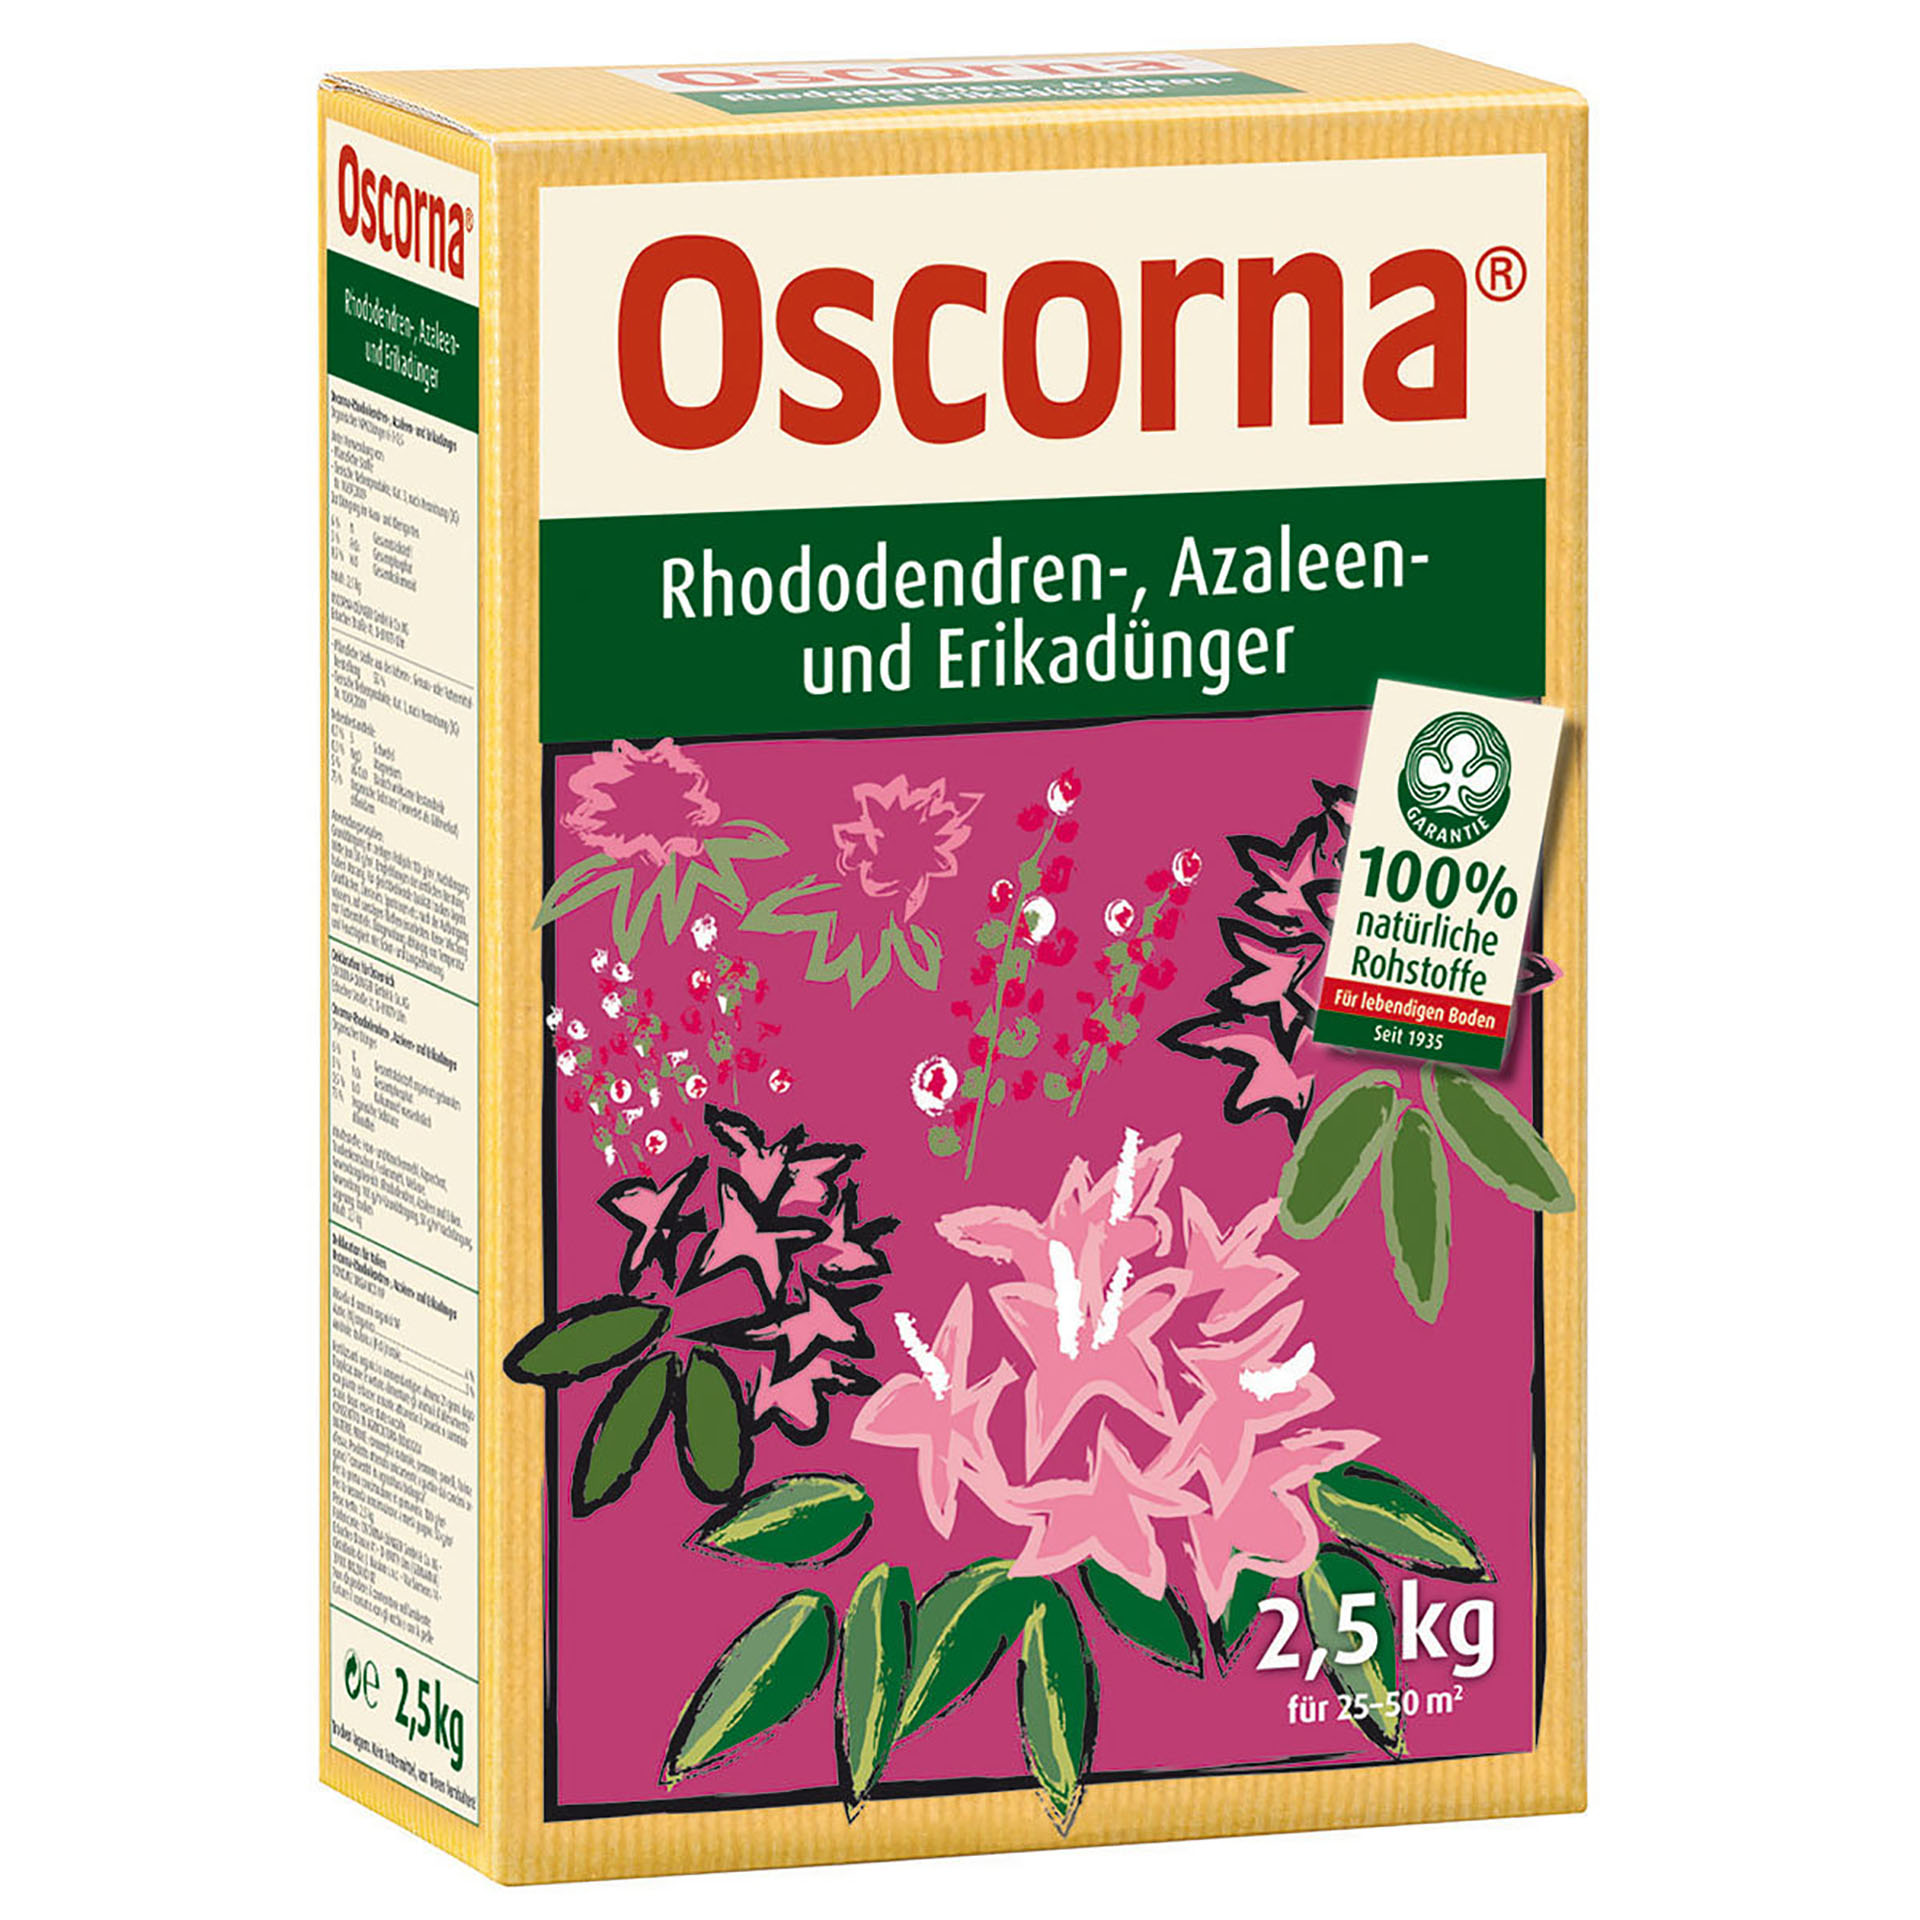 Oscorna Rhododendren-, Azaleen- und Erikadünger 2,5kg